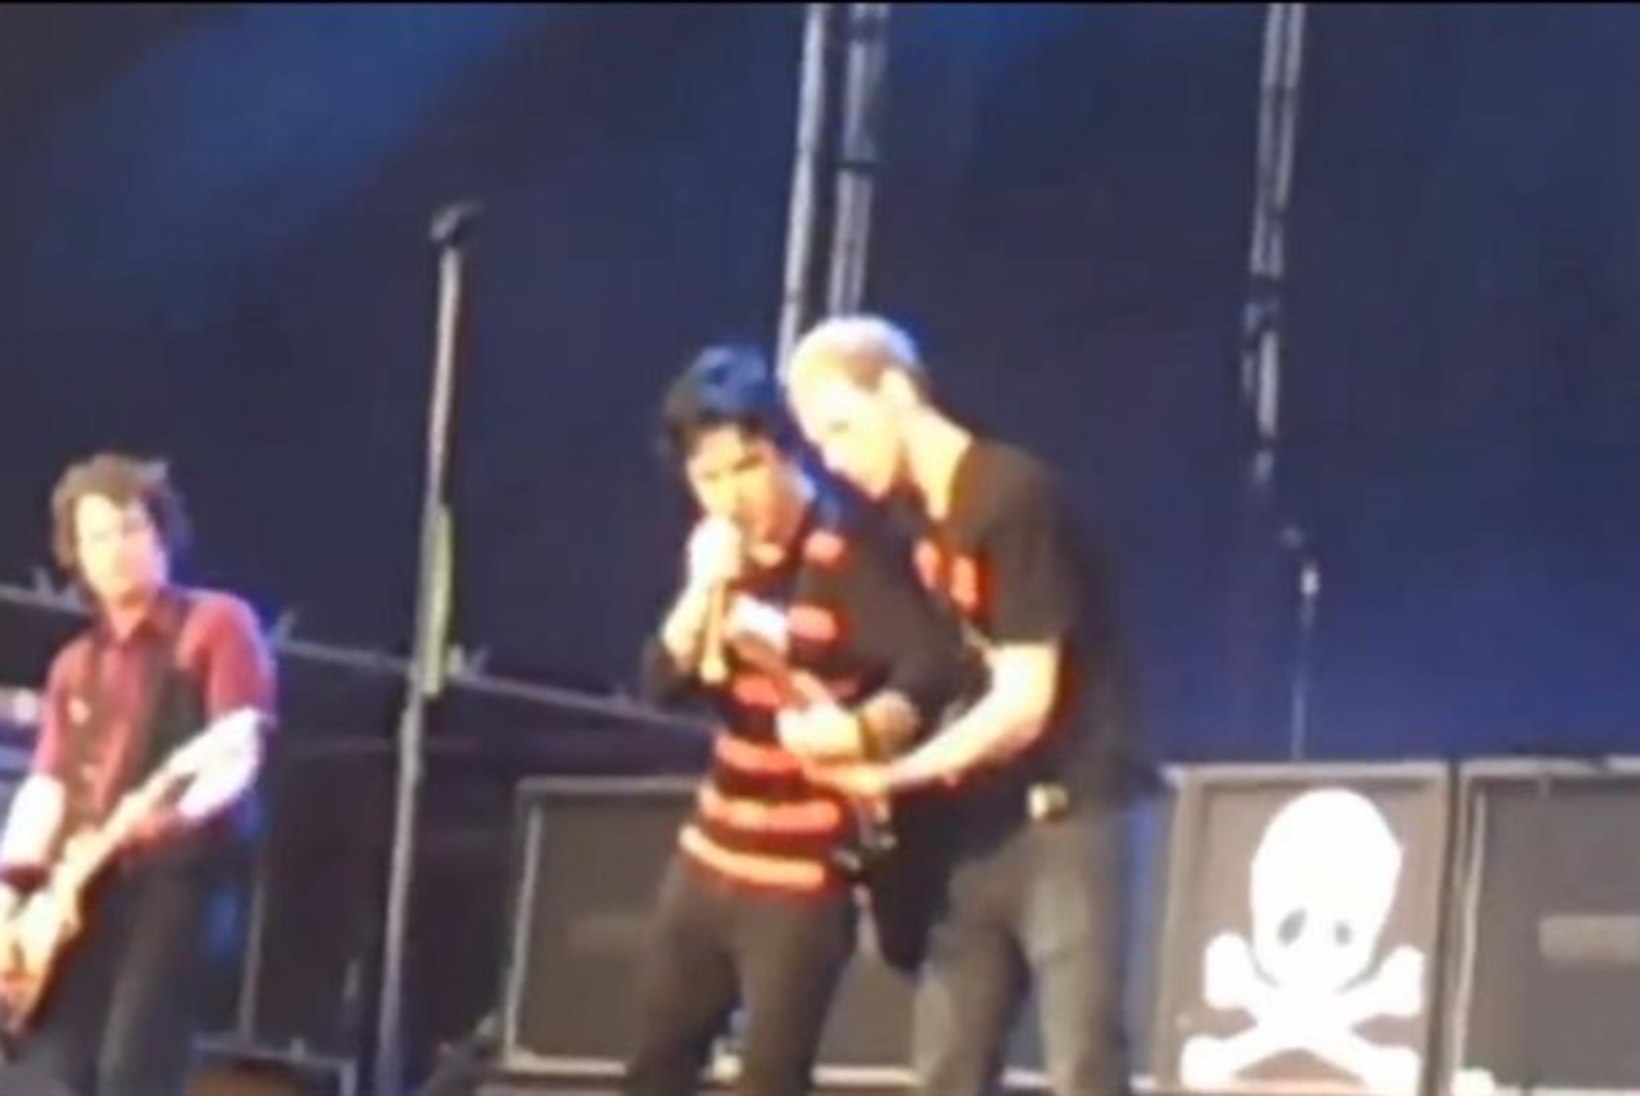 Green Day laulja kutsus kontserdil fänni lavale ja kinkis talle oma kitarri